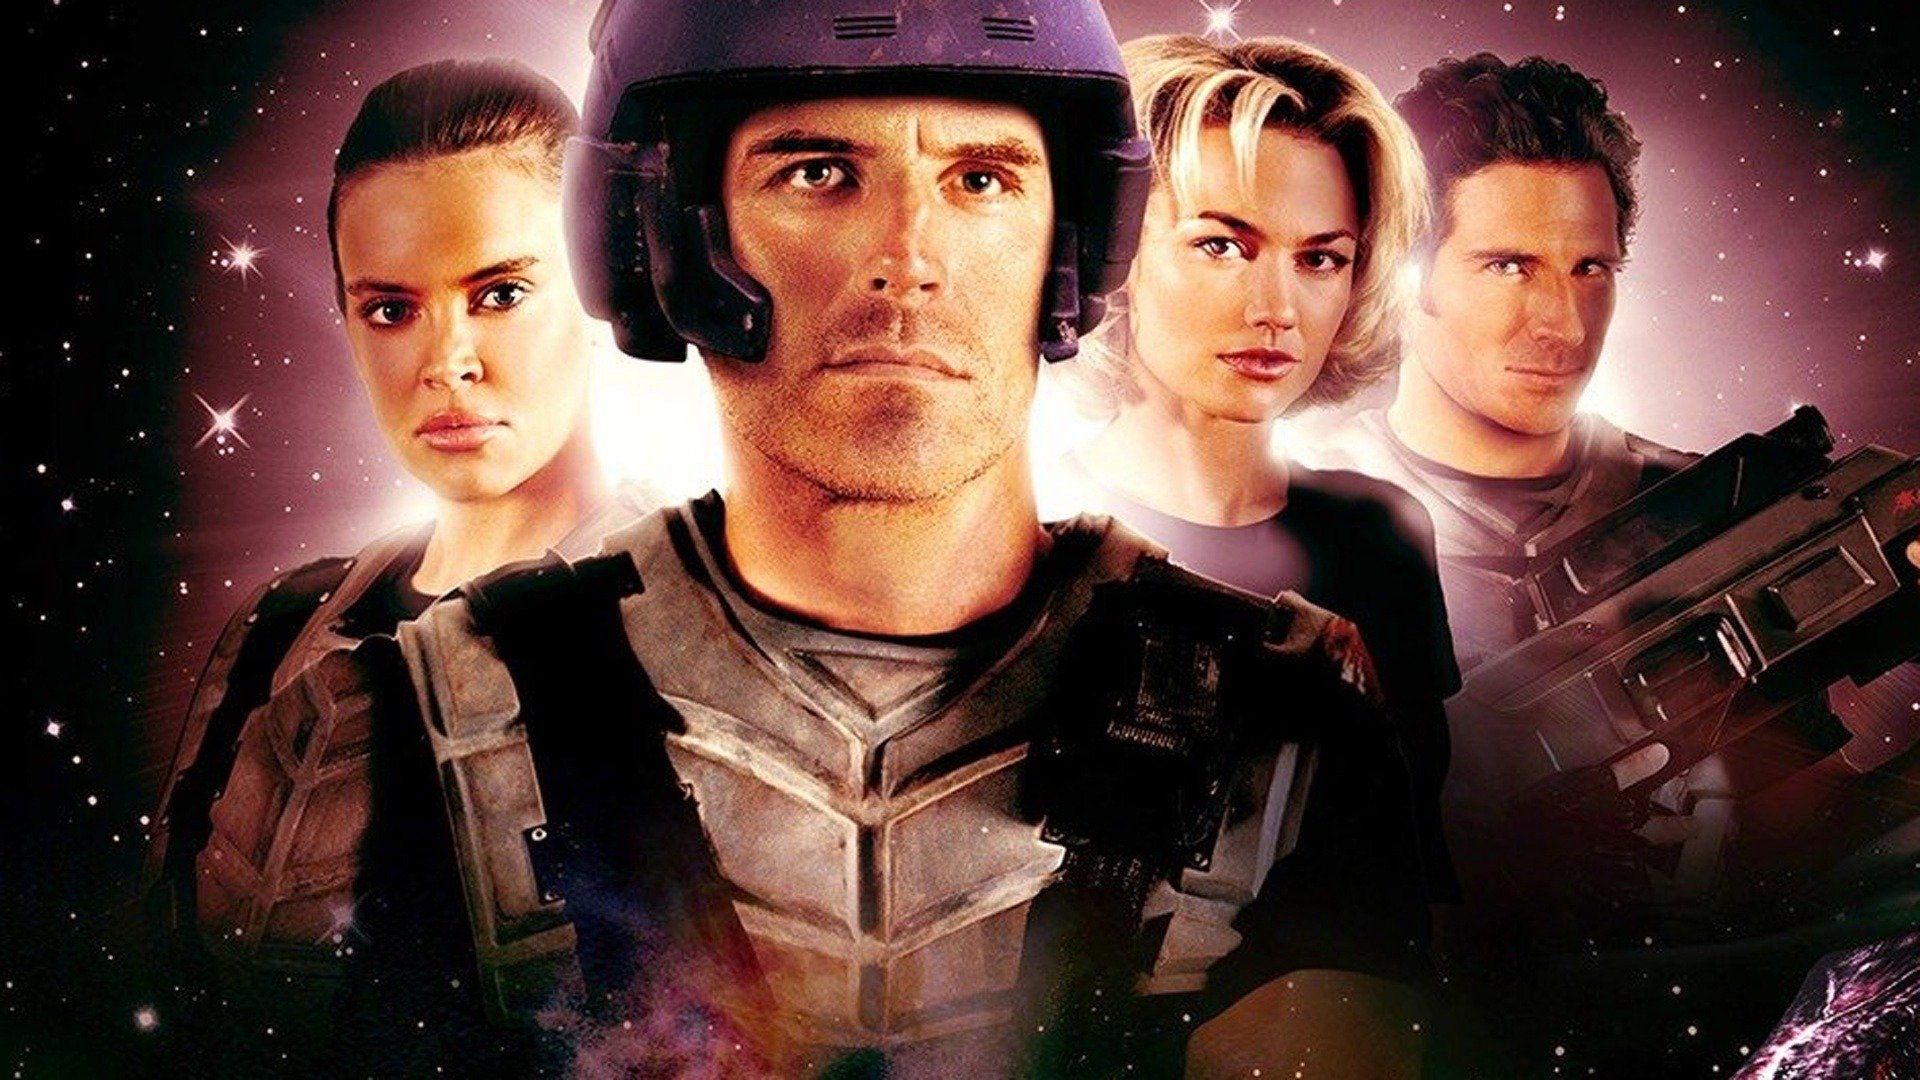 Nhện Khổng Lồ 2: Anh Hùng Của Liên Bang - Starship Troopers 2: Hero of the Federation (2004)